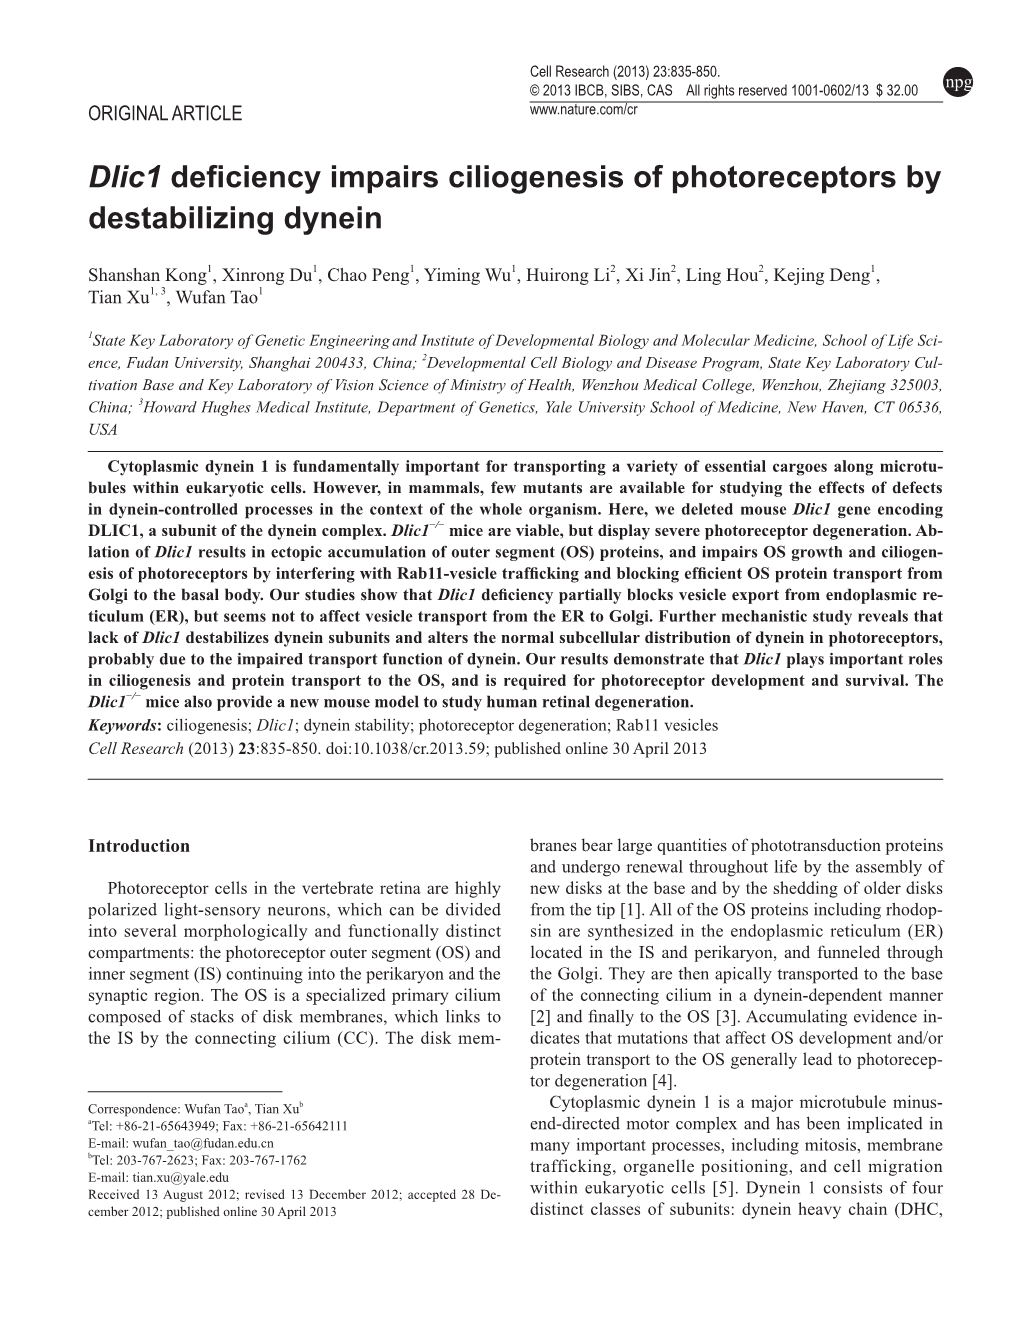 Dlic1 Deficiency Impairs Ciliogenesis of Photoreceptors by Destabilizing Dynein